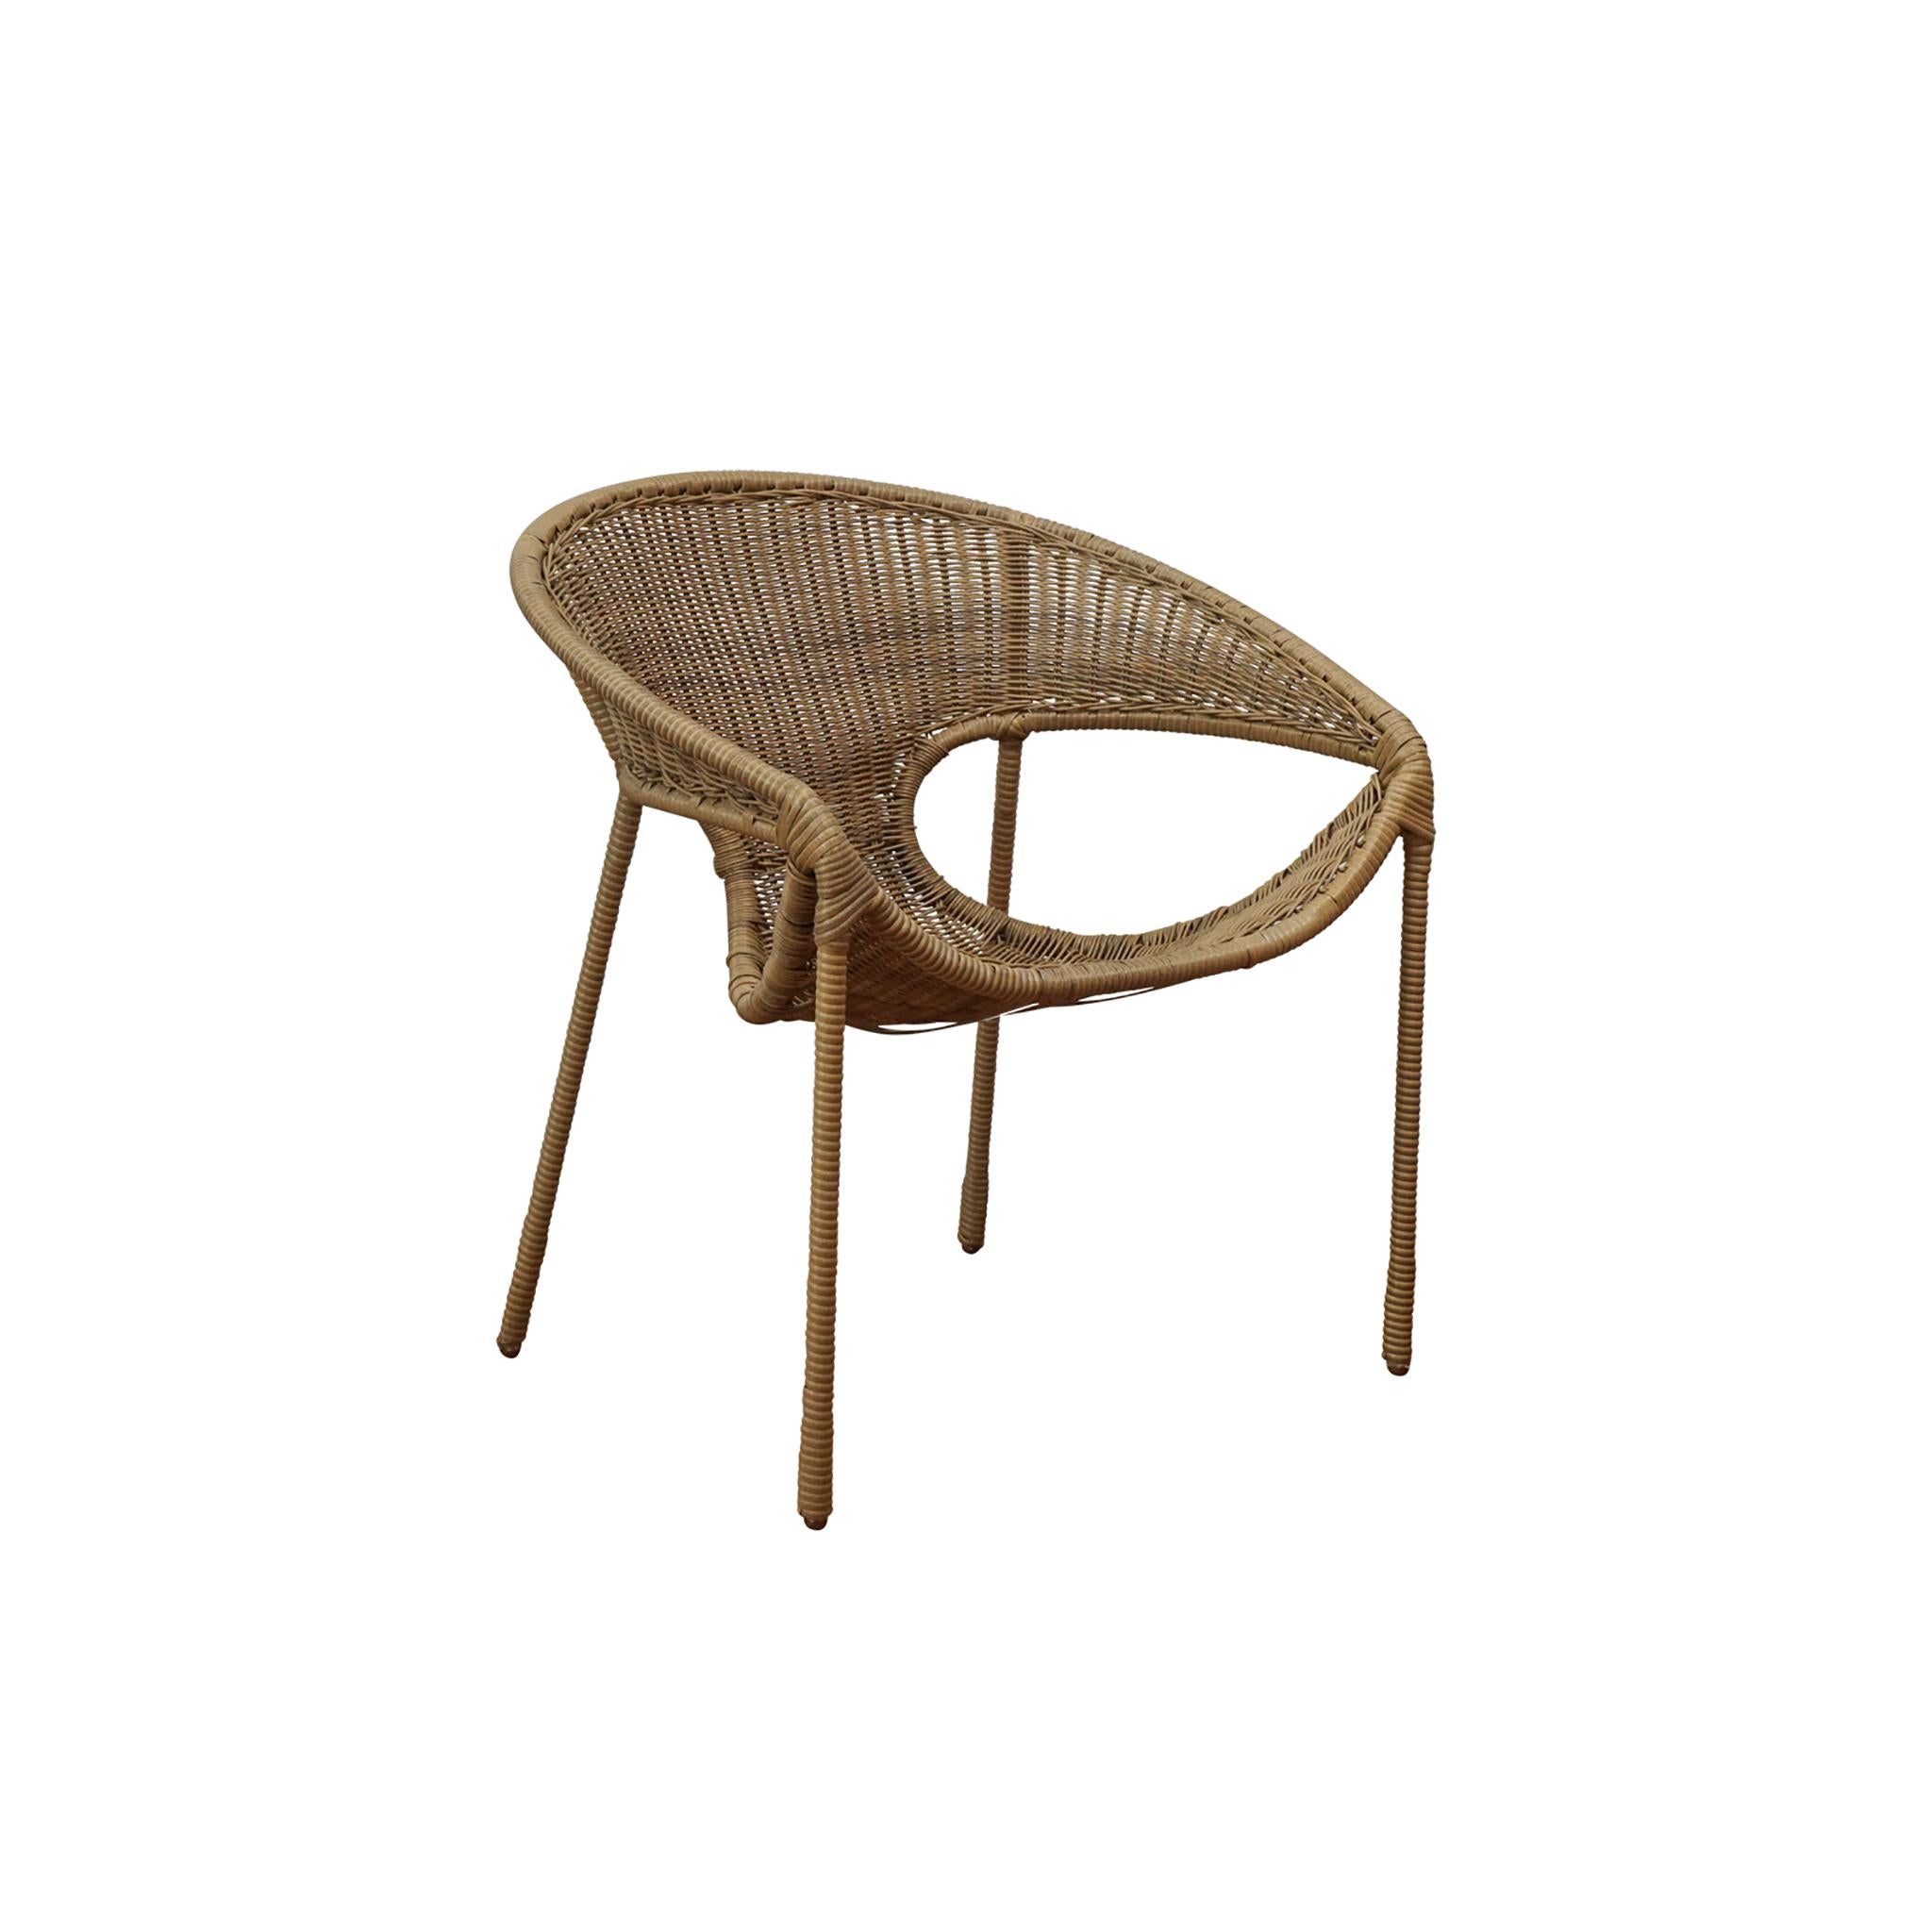 La chaise de salle à manger Tulum a été inspirée par la chaise classique Miller Fong et mise à jour pour une utilisation extérieure et un confort accru. La chaise est composée d'une structure en métal et d'une assise en polypropylène tissé. De